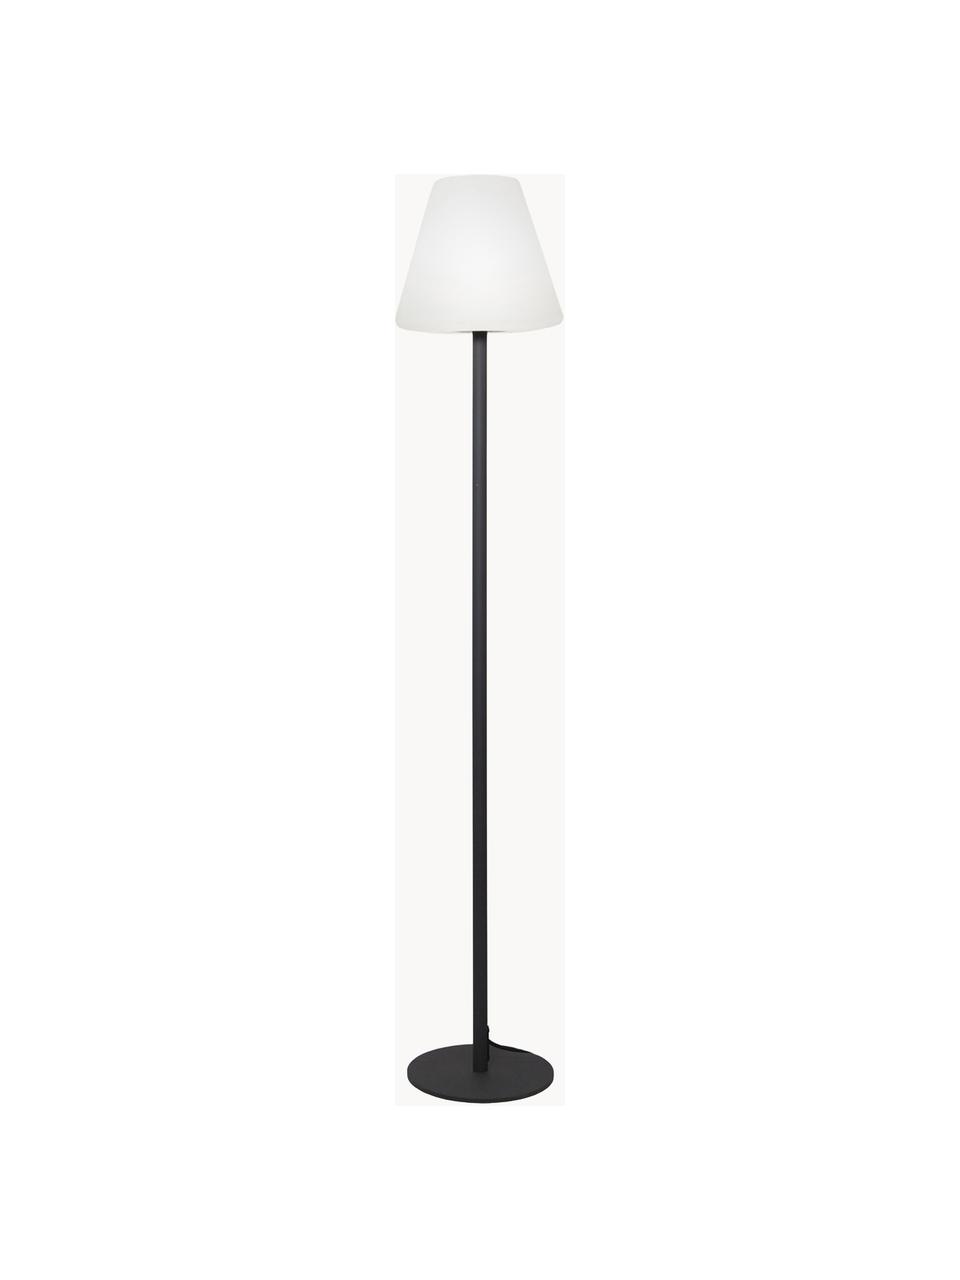 Zewnętrzna lampa podłogowa LED z wtyczką Gardenlight, Biały, antracytowy, Ø 28 x W 150 cm